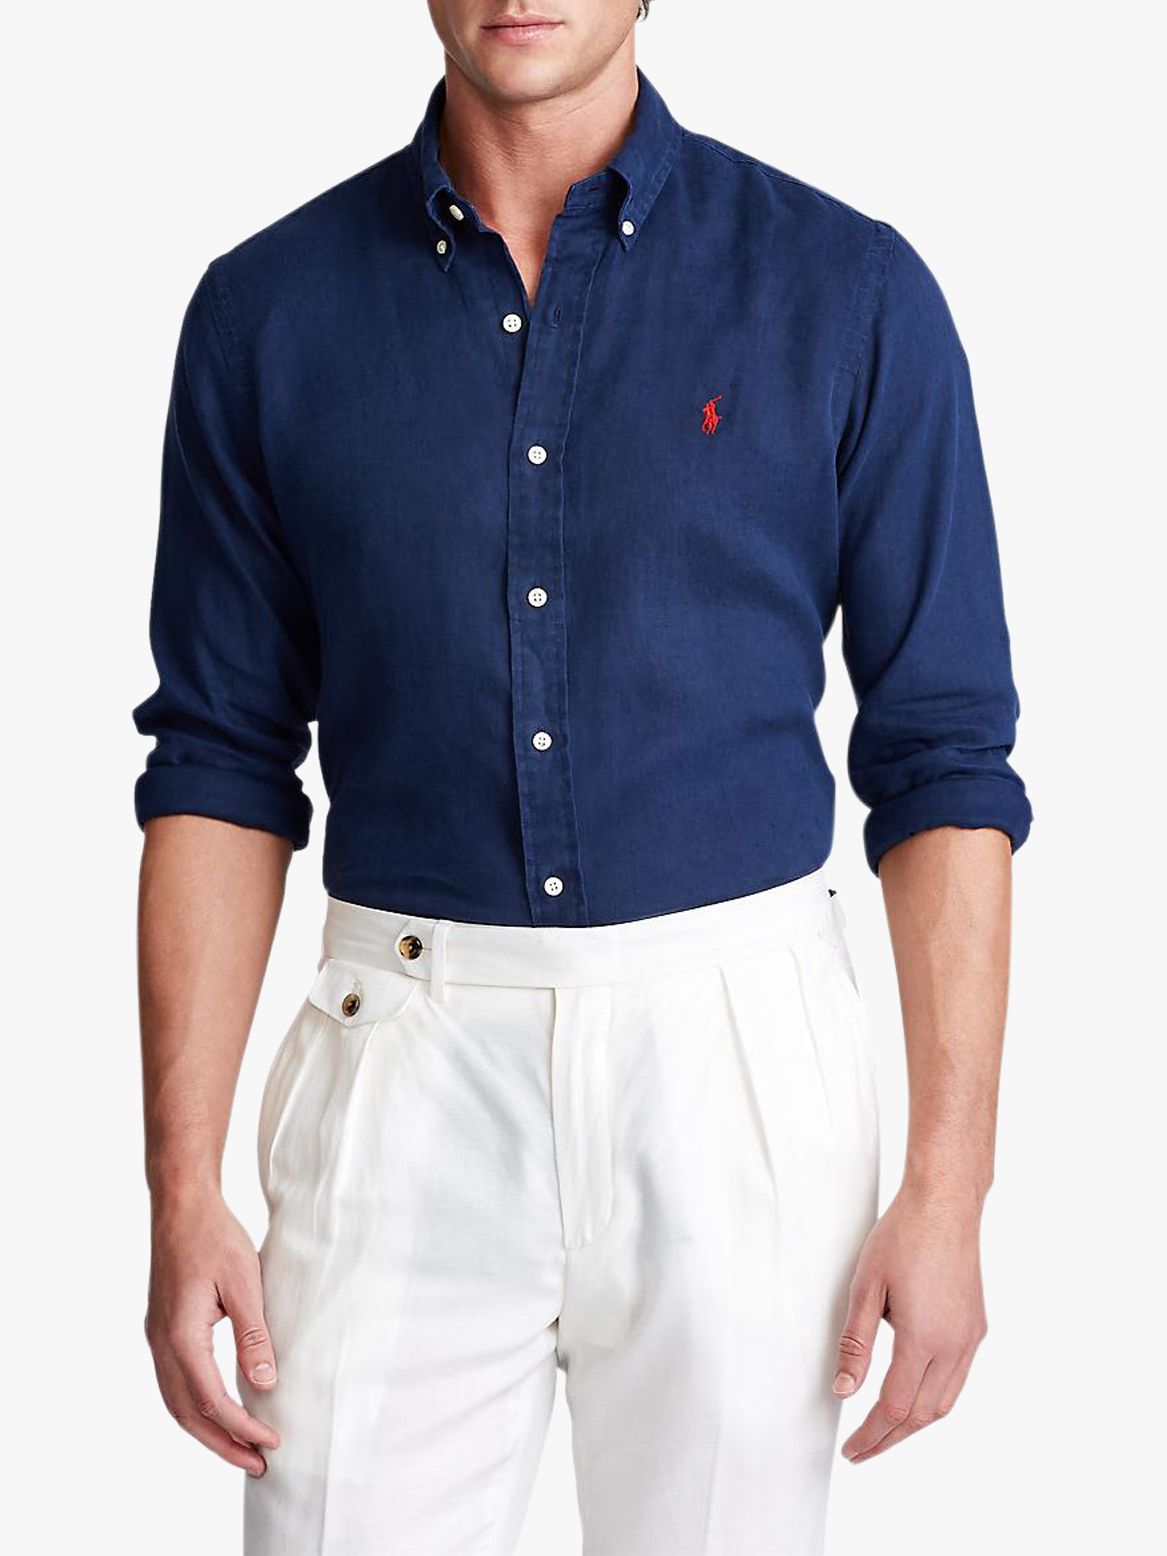 Polo Ralph Lauren Linen Shirt at John 